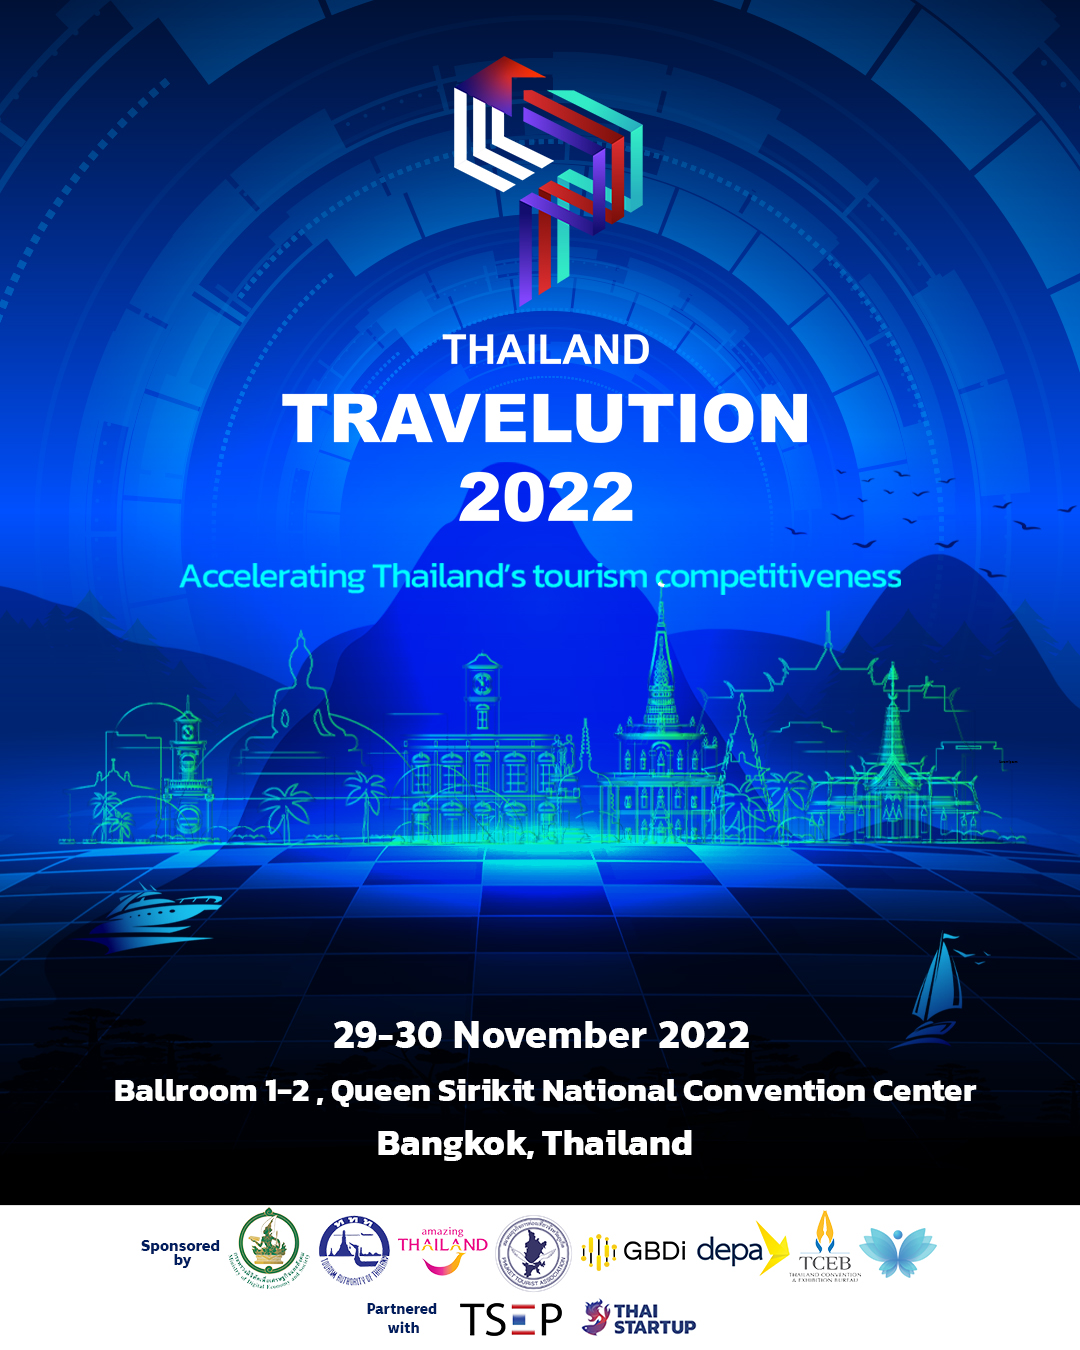 สทน. ขอเชิญสมาชิกเข้าร่วมงาน Thailand Travelution ๒๐๒๒ งานเทคโนโลยี เพื่อการท่องเที่ยว